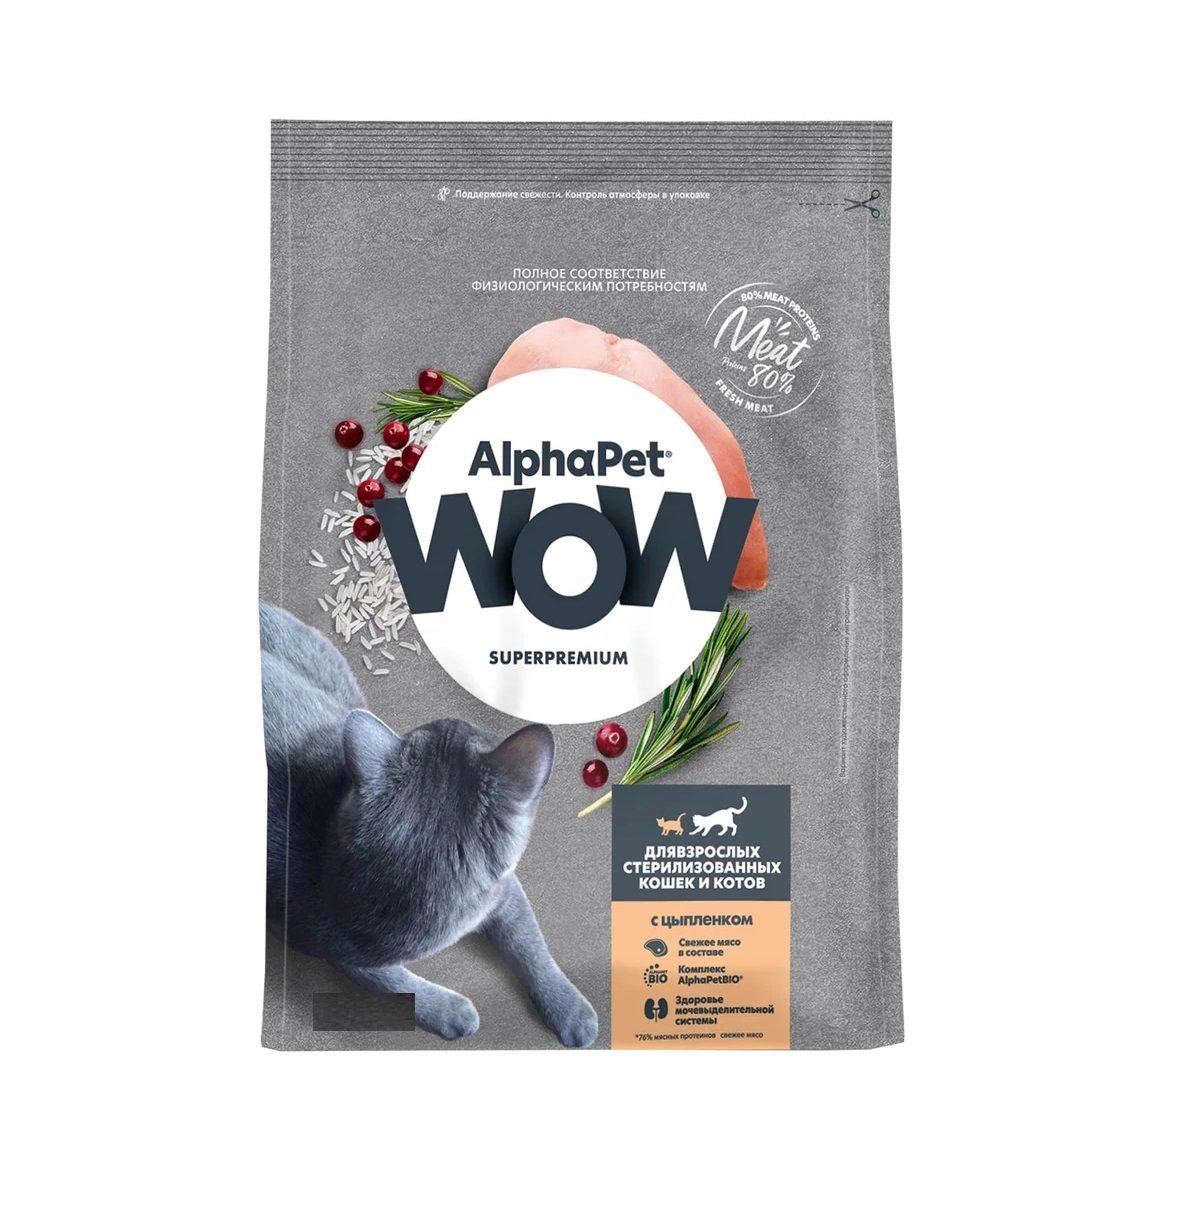 АльфаПет WOW 1,5кг - для Стерилизованных кошек, Цыпленок (Alpha Pet WOW) + Подарок